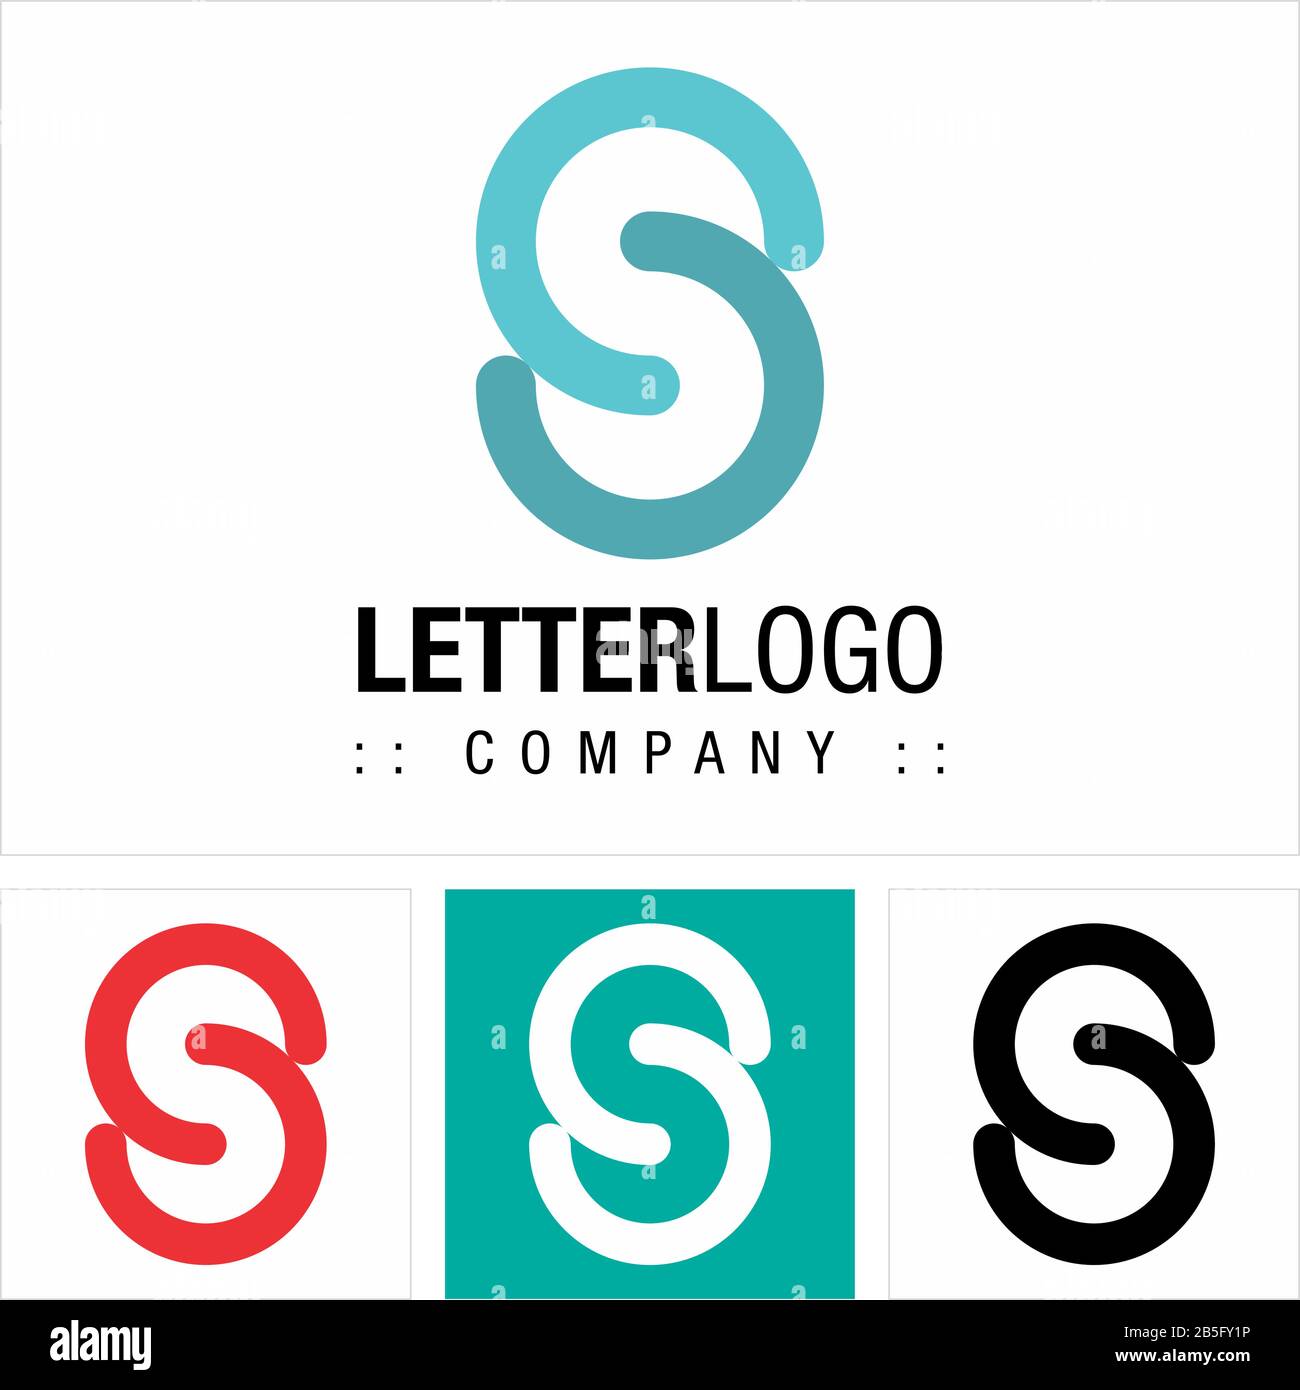 Logo Di Letter S Vector Symbol Company (Logotipo). Linee Icona Stile Geometrico Illustrazione. Modello Di Idea Di Concetto Di Identità Moderno Ed Elegante Illustrazione Vettoriale